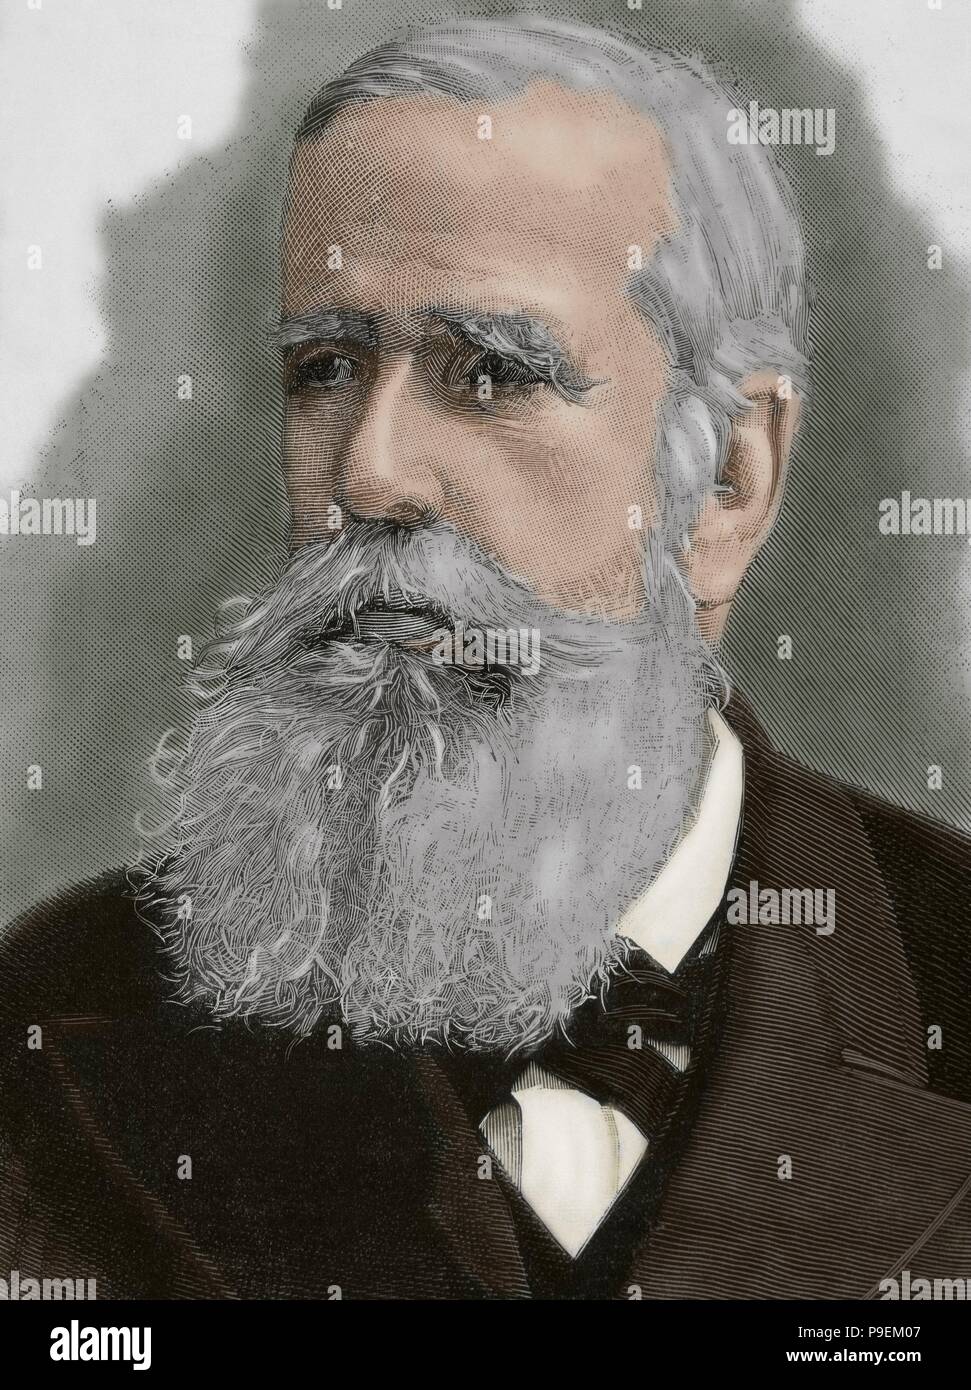 Pedro II. von Brasilien (1825-1891), des Großmütigen. Zweiter und letzter Herrscher des Reiches von Brasilien. Porträt. Gravur. Gefärbt. Stockfoto